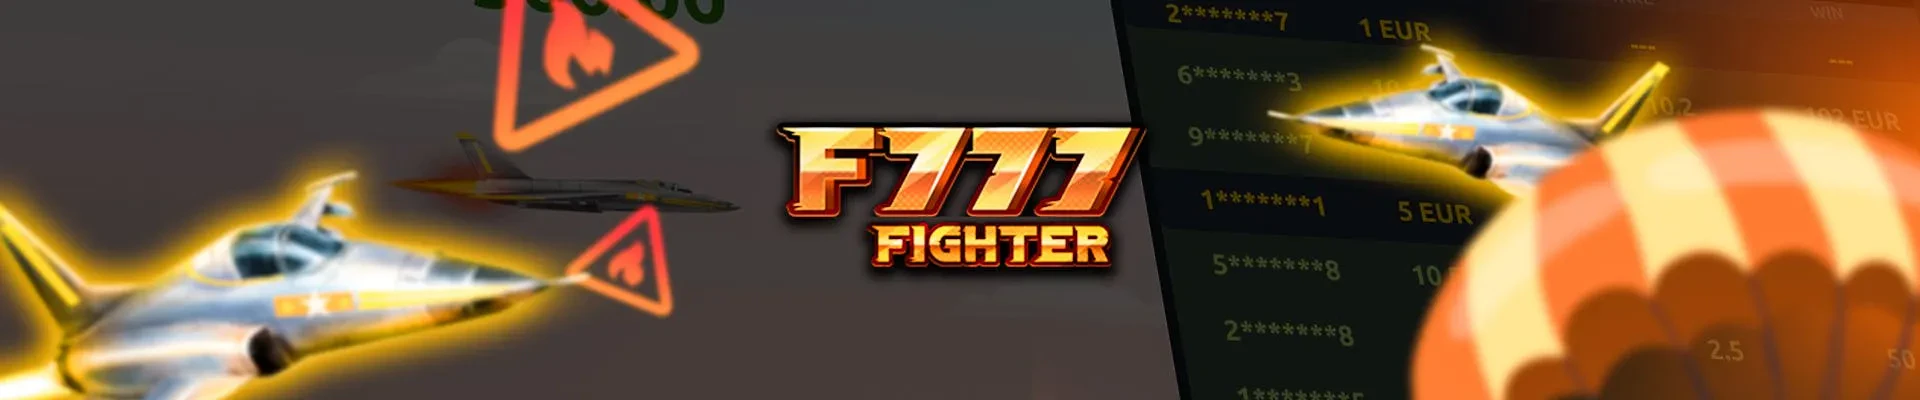 f777 fighter le nouveau jetx